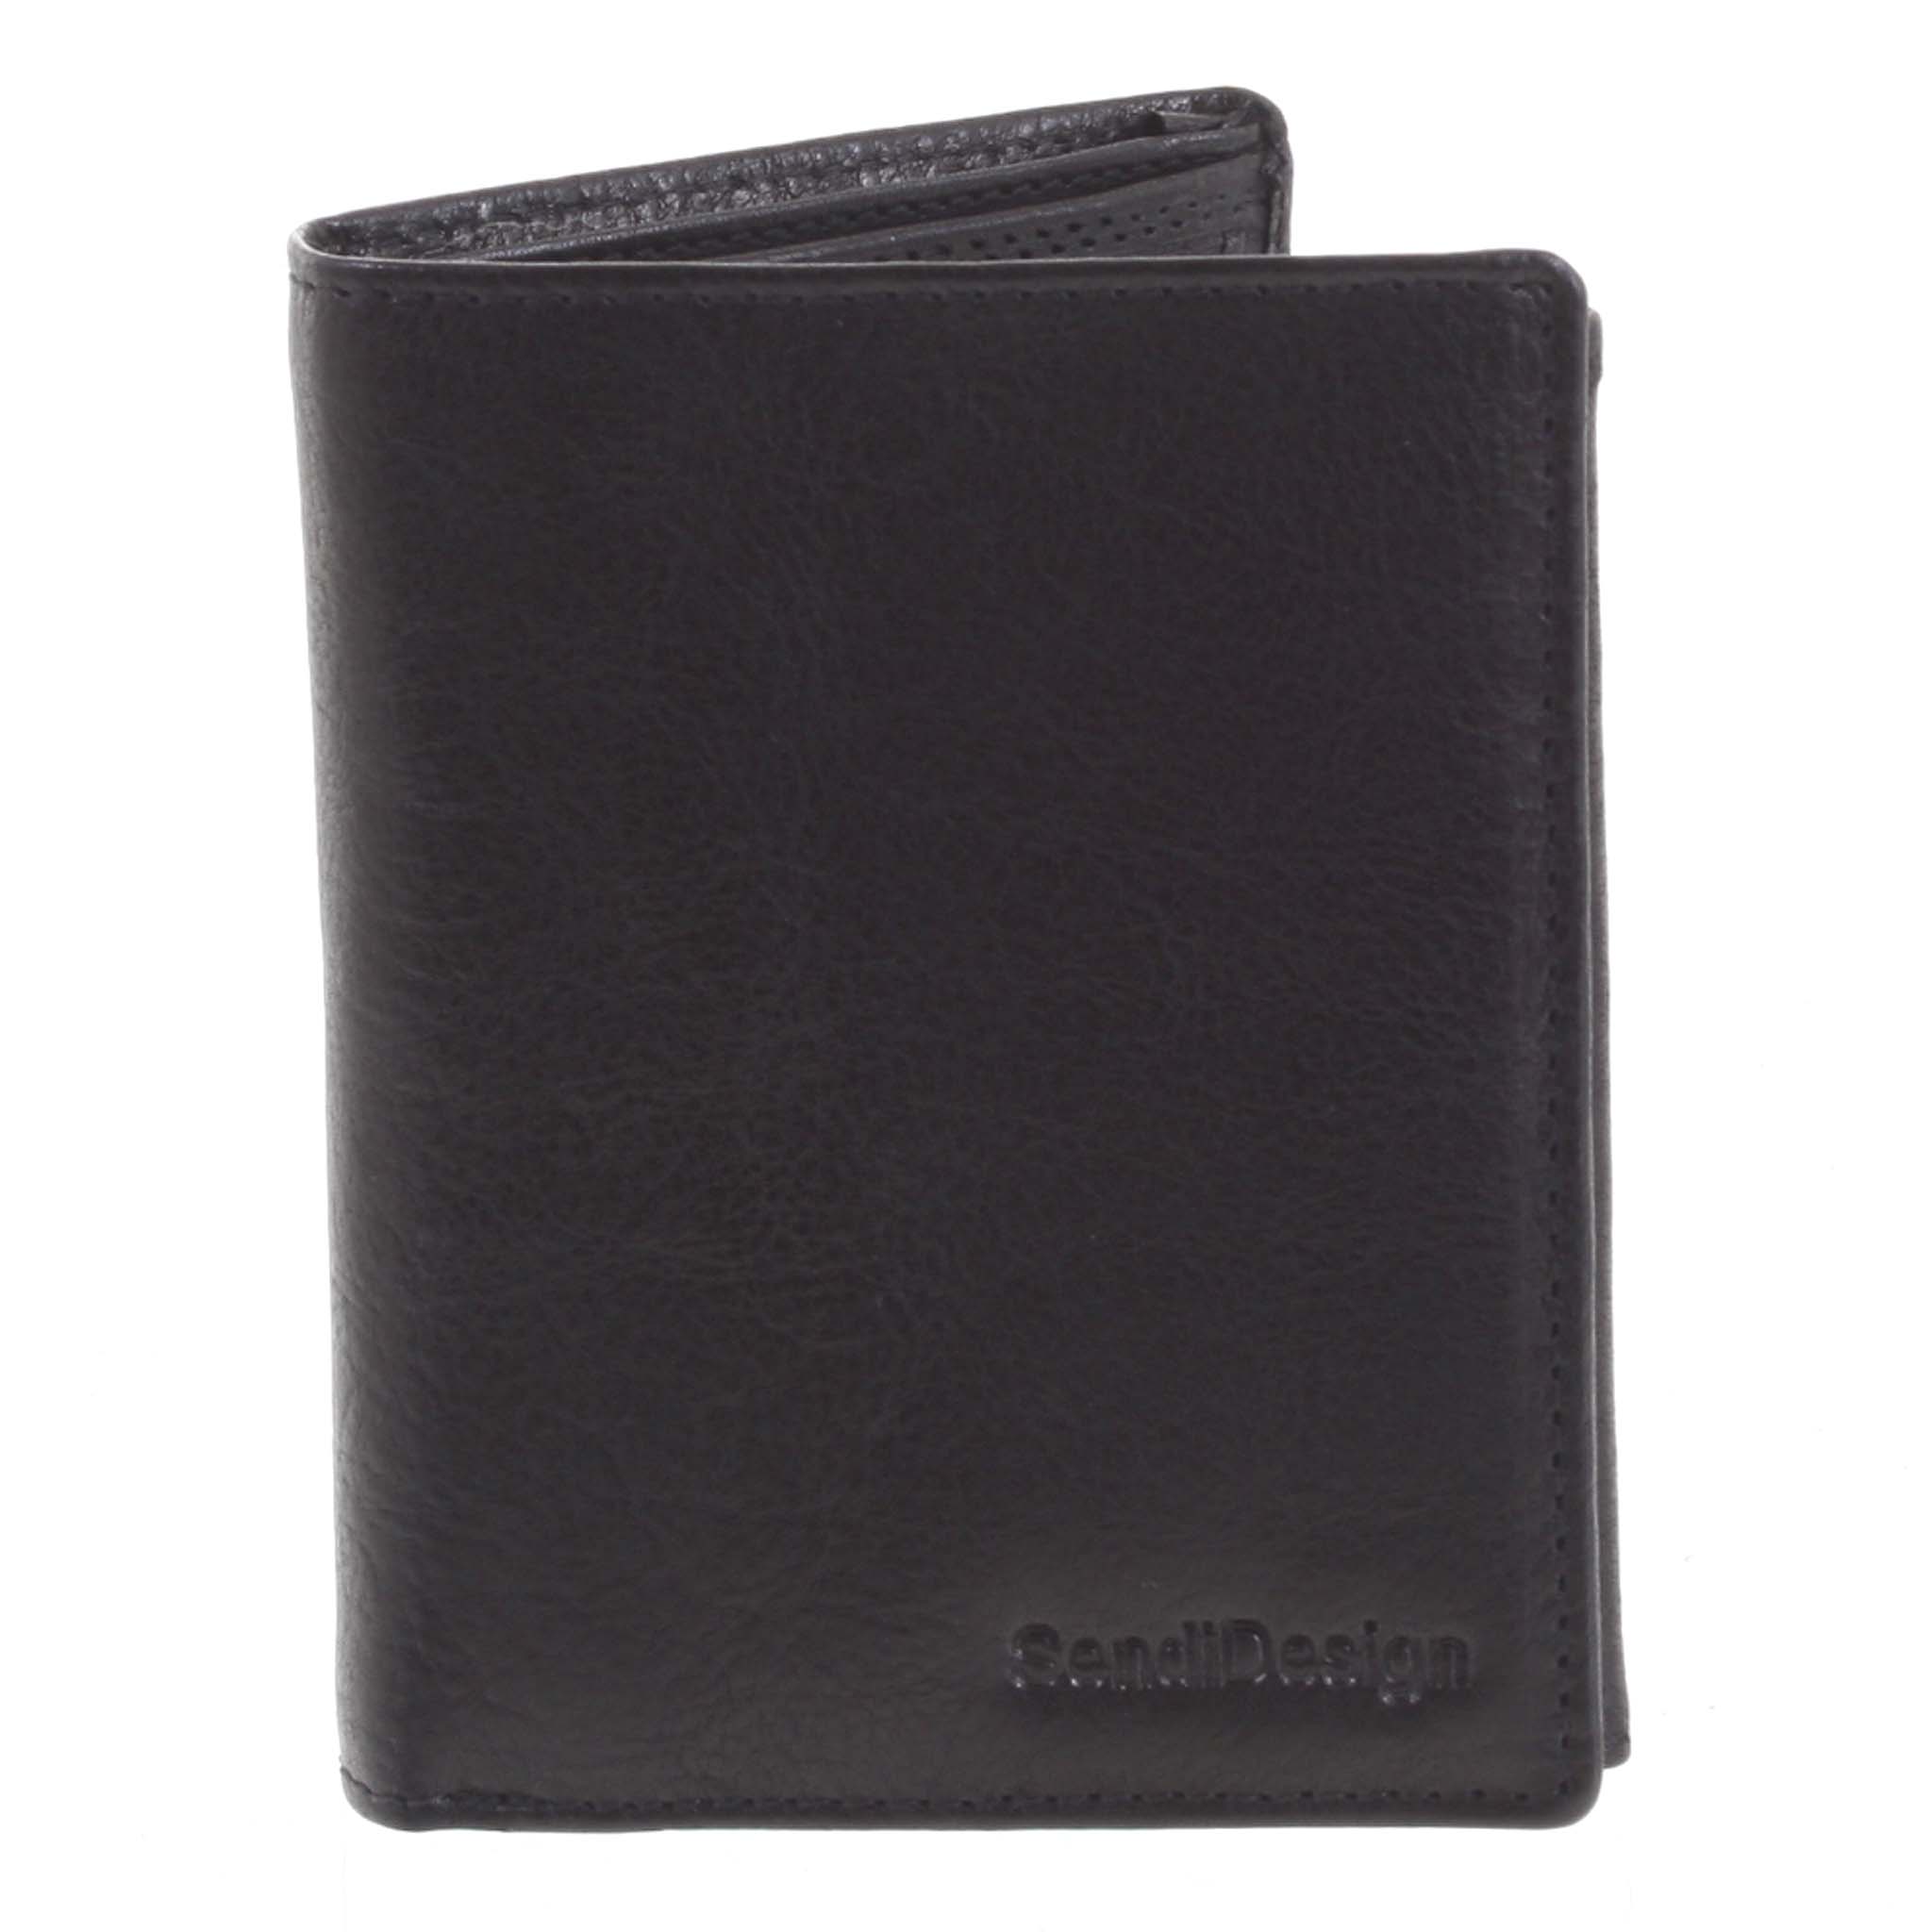 Pánská kožená peněženka černá - SendiDesign Benny černá